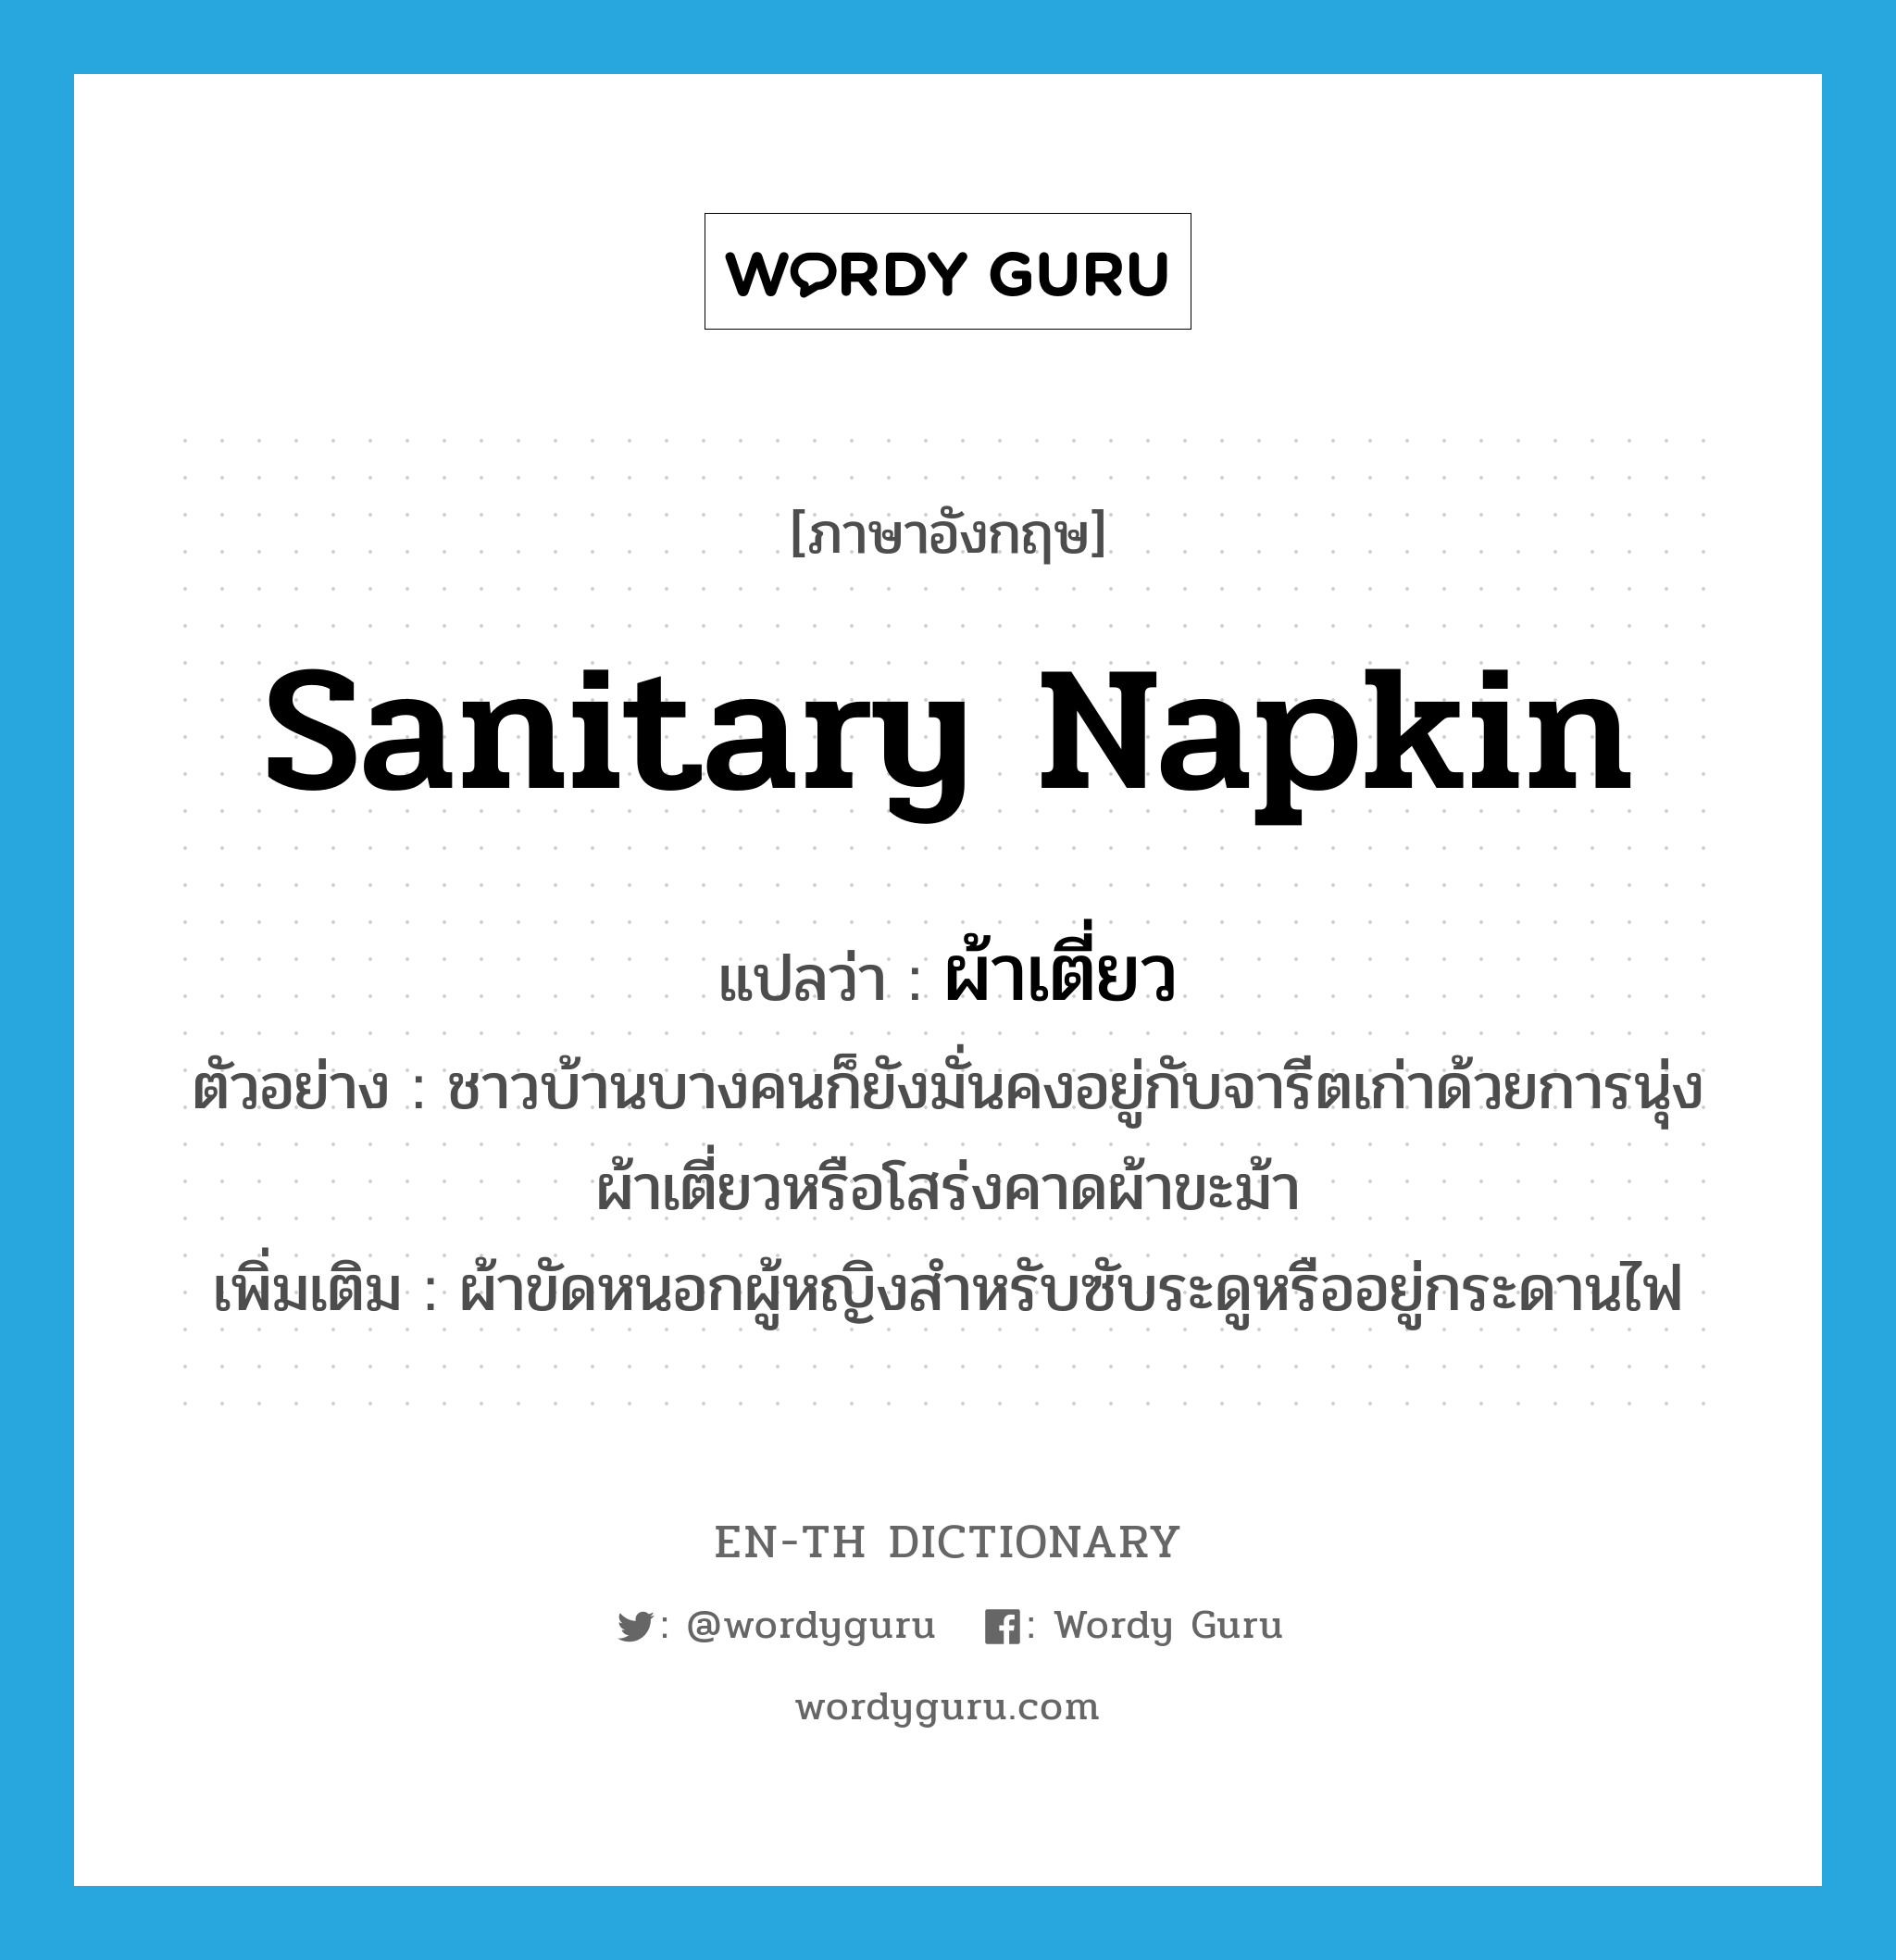 sanitary napkin แปลว่า?, คำศัพท์ภาษาอังกฤษ sanitary napkin แปลว่า ผ้าเตี่ยว ประเภท N ตัวอย่าง ชาวบ้านบางคนก็ยังมั่นคงอยู่กับจารีตเก่าด้วยการนุ่งผ้าเตี่ยวหรือโสร่งคาดผ้าขะม้า เพิ่มเติม ผ้าขัดหนอกผู้หญิงสำหรับซับระดูหรืออยู่กระดานไฟ หมวด N